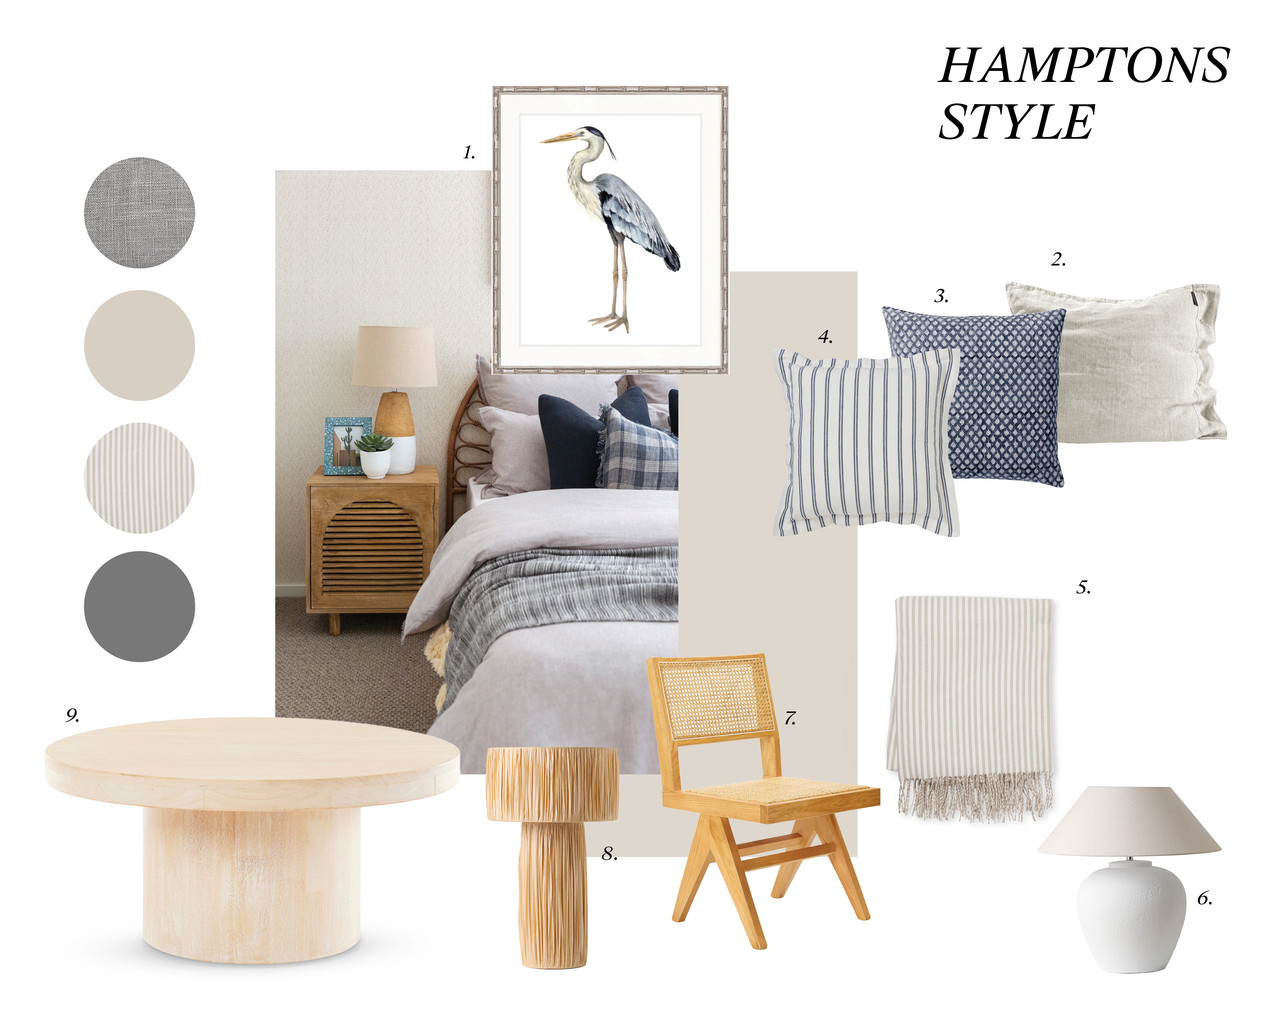 CHB481 - Hampton-s Living Room Styling BODY 2.jpg